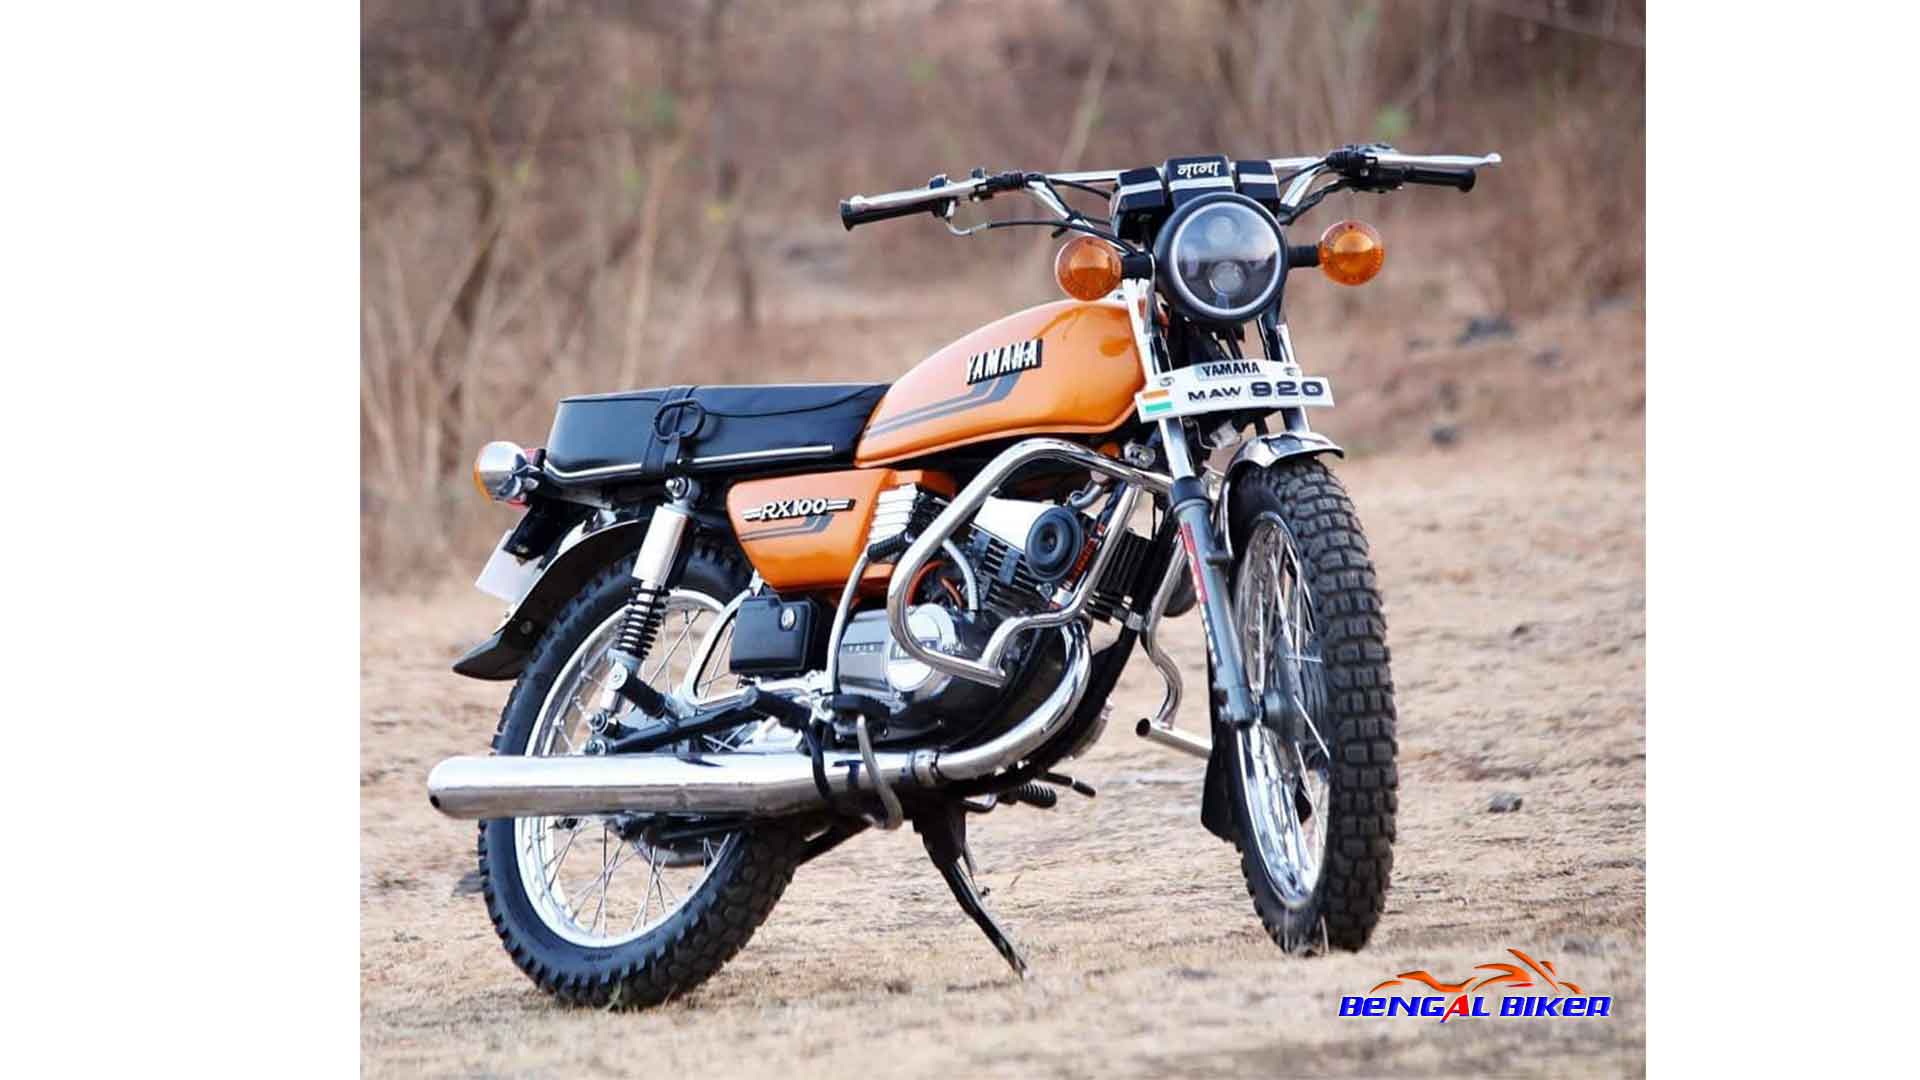 Yamaha RX100 Price in Bangladesh - Bengal Biker | Motorcycle ...